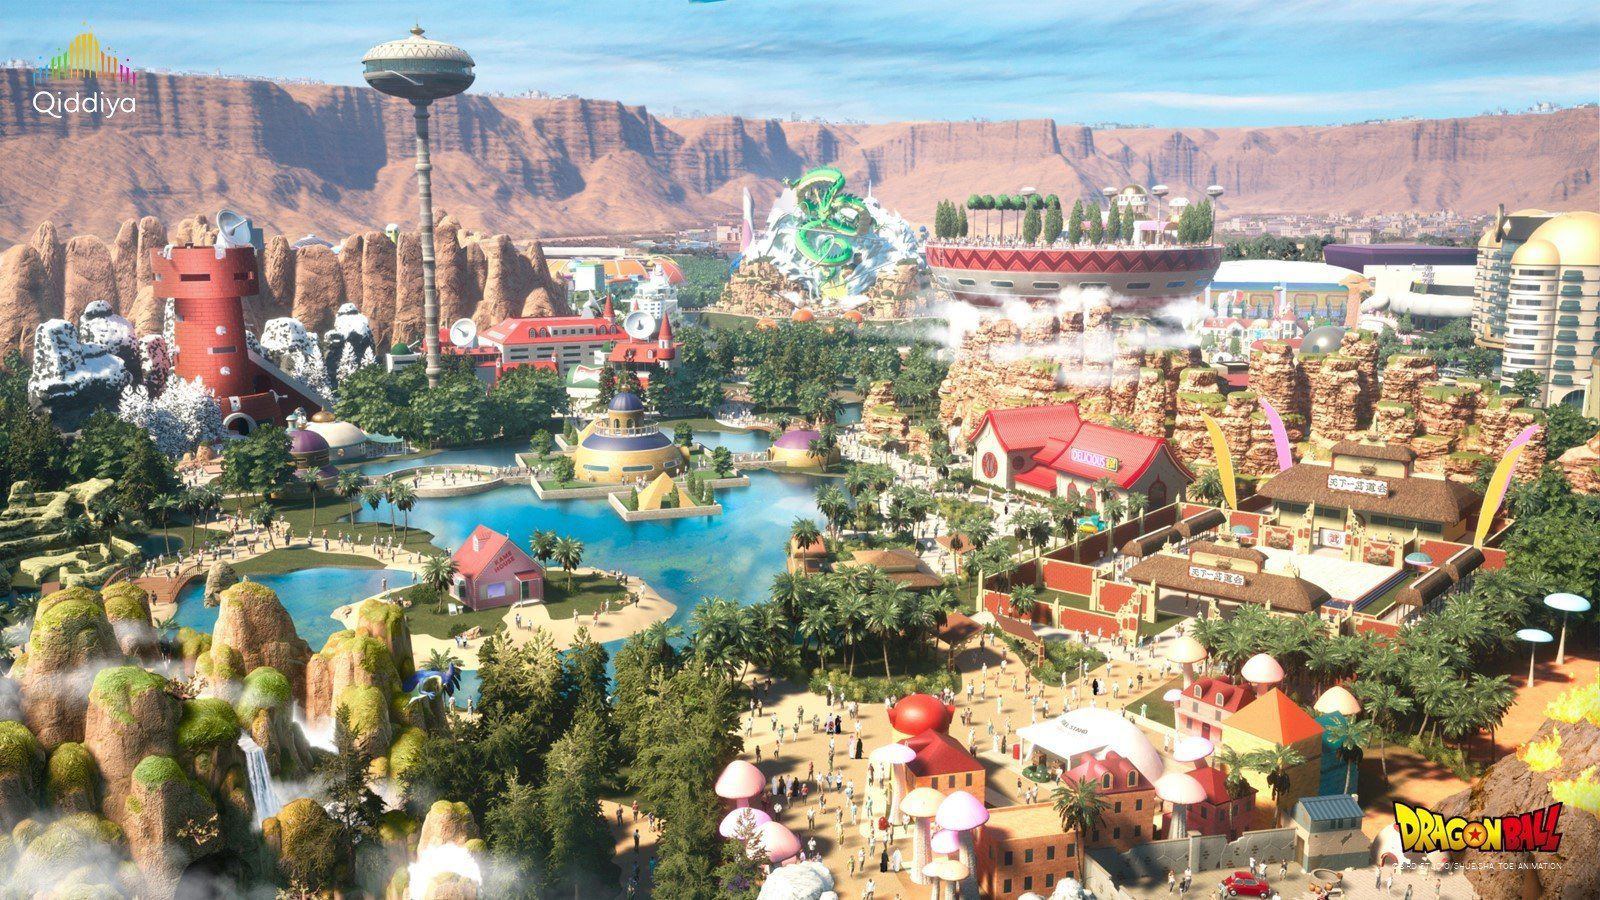 El parque temático Dragon Ball se construirá en Arabia Saudita. Foto: X de /CerebrosG